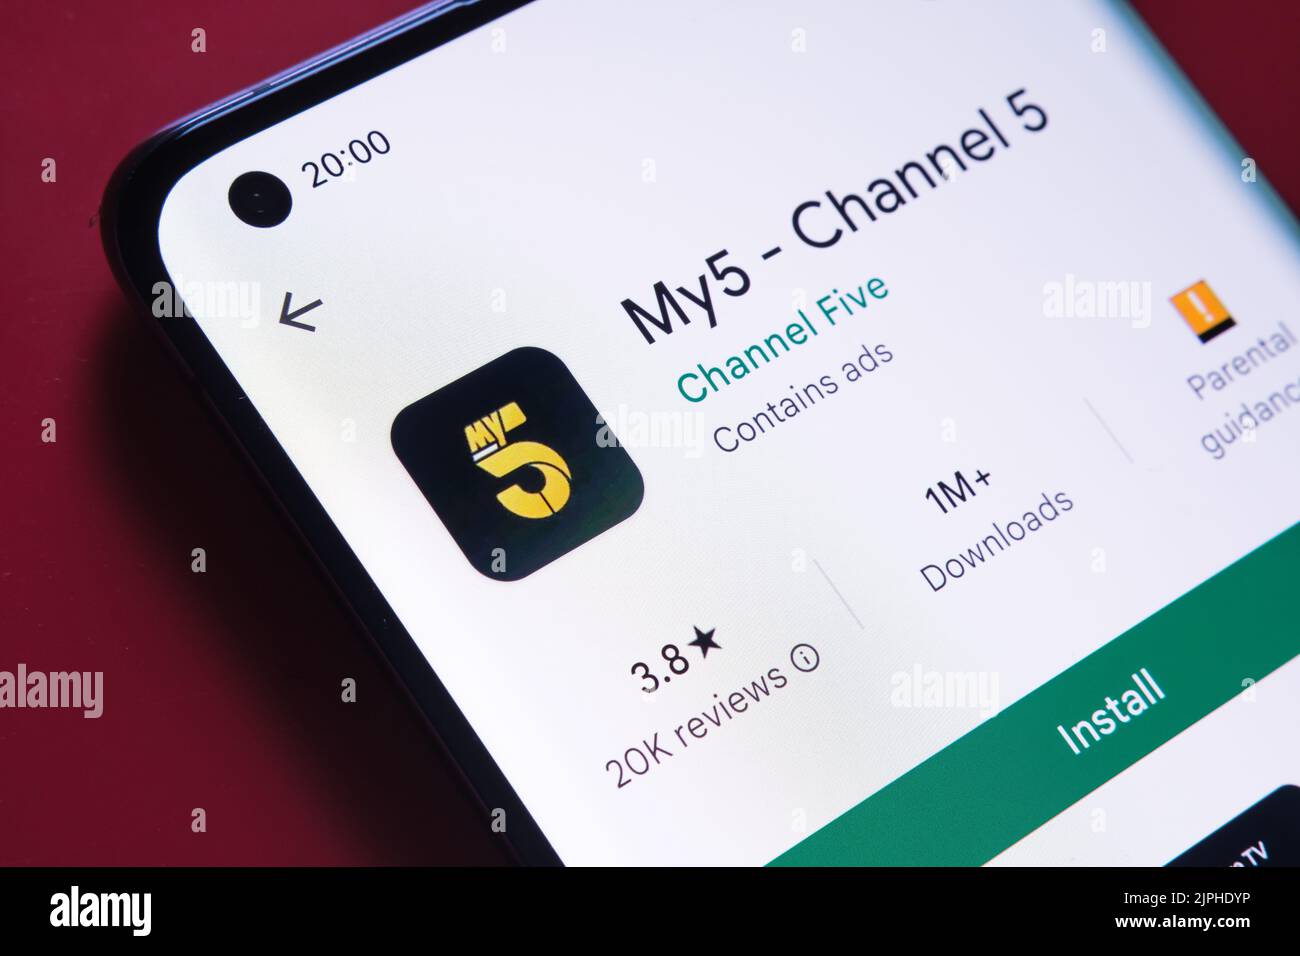 My5 Kanal 5 App gesehen in Google Play Store auf dem Smartphone-Bildschirm auf rotem Hintergrund platziert. Nahaufnahme mit selektivem Fokus. Stafford, Vereinigte Staaten von Amerika Stockfoto